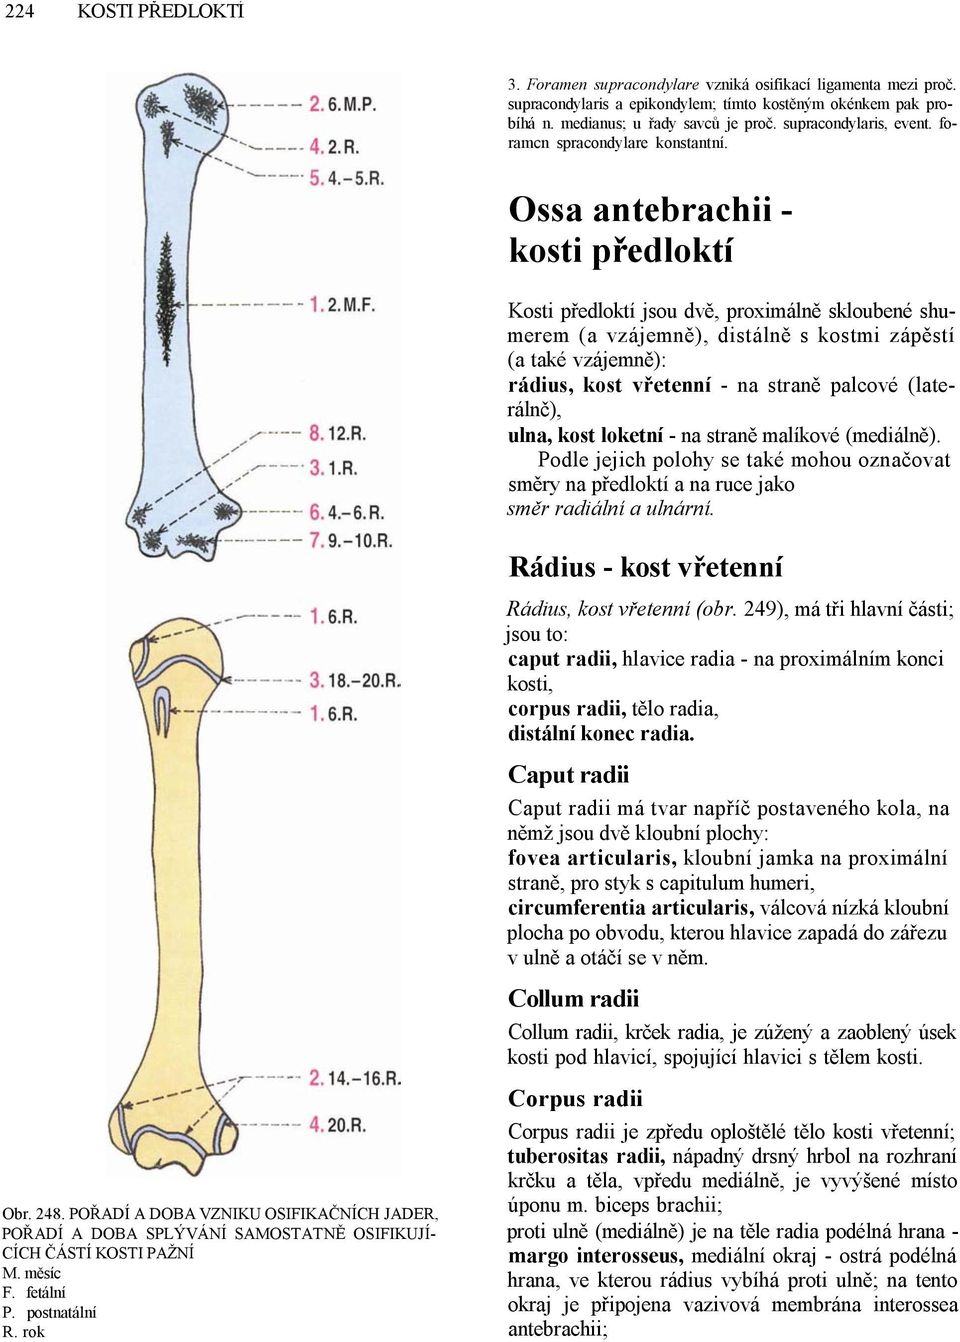 Ossa antebrachii - kosti předloktí Kosti předloktí jsou dvě, proximálně skloubené shumerem (a vzájemně), distálně s kostmi zápěstí (a také vzájemně): rádius, kost vřetenní - na straně palcové